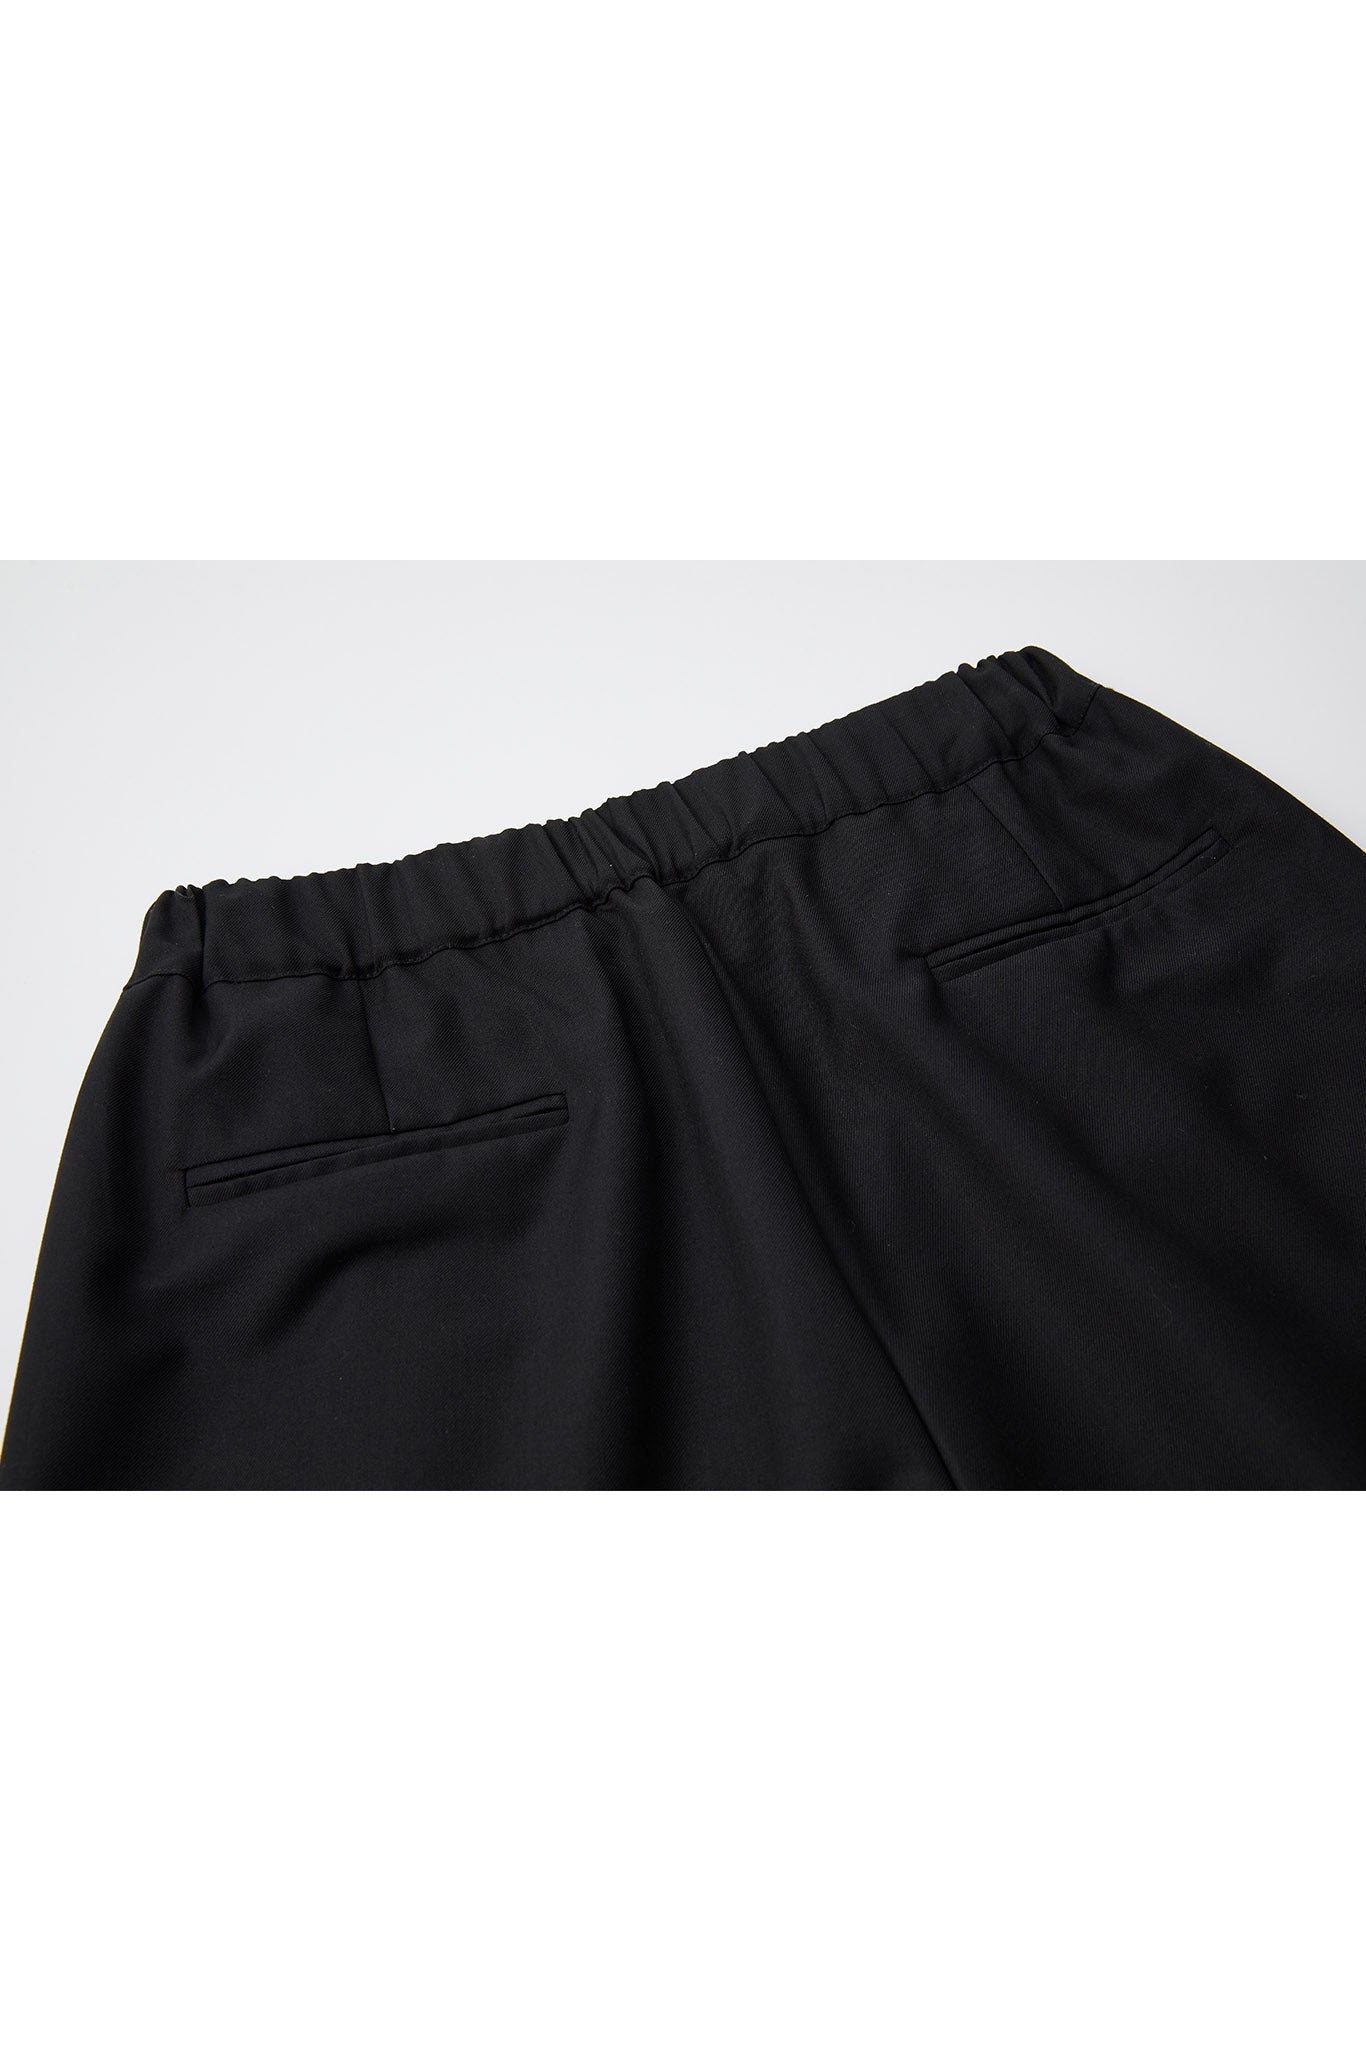 [tageechita] Basic wide straight pants